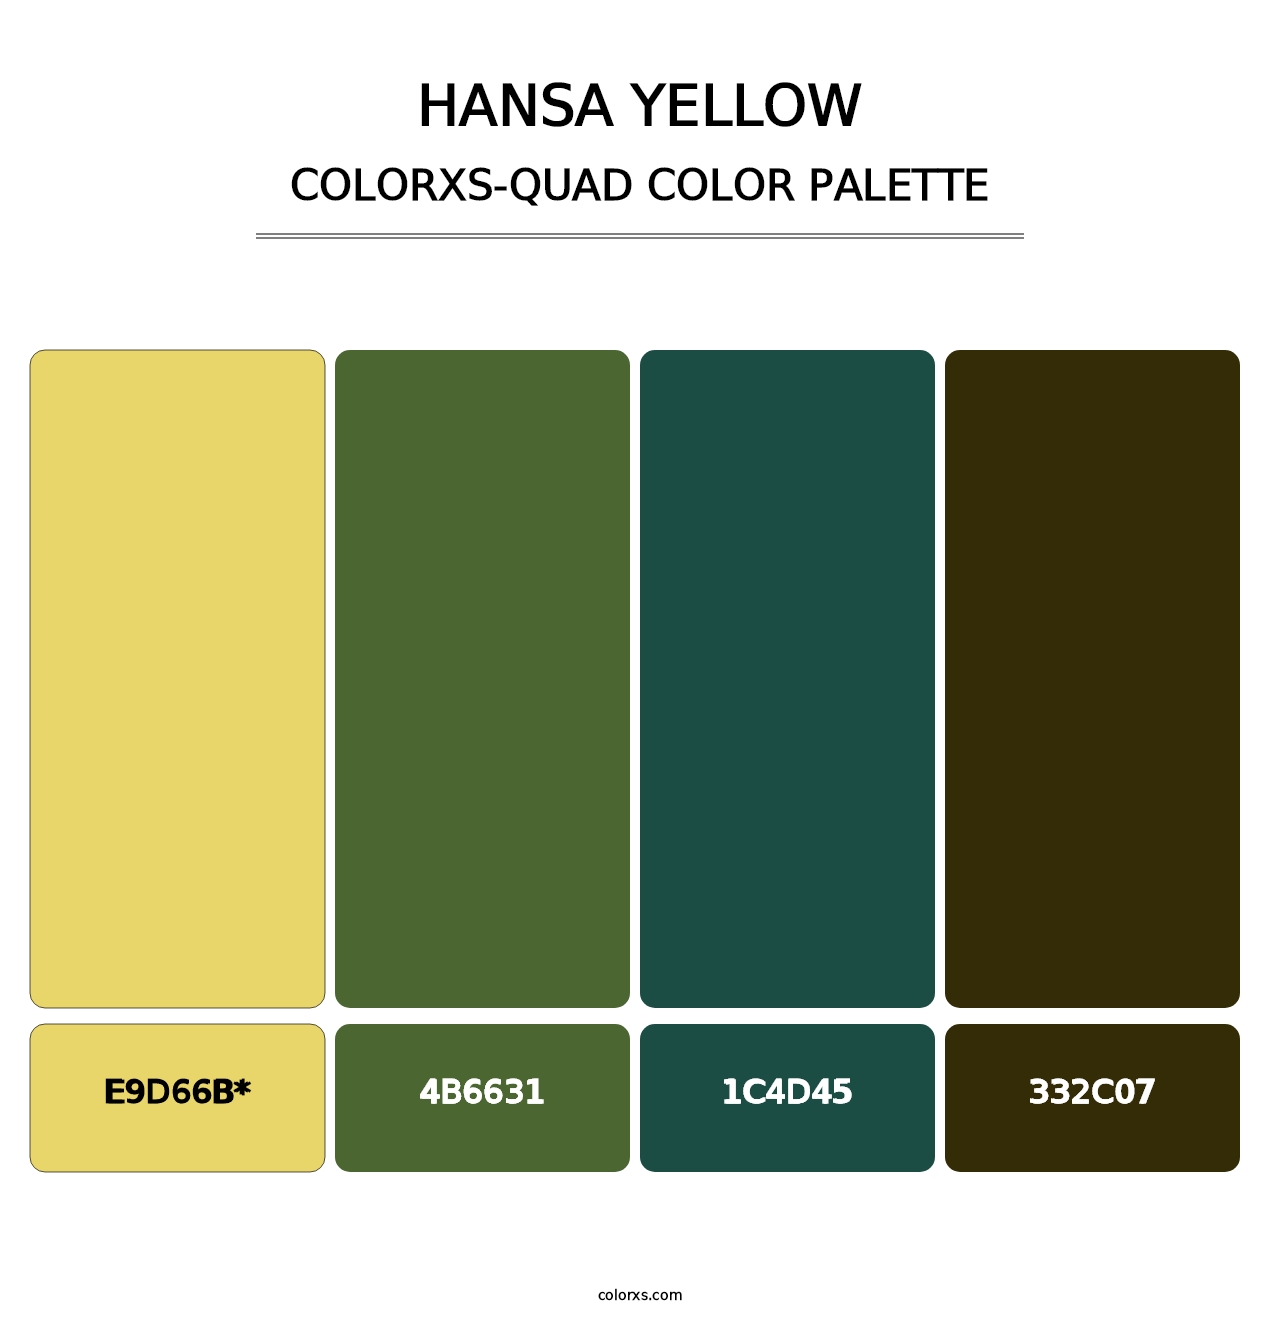 Hansa Yellow - Colorxs Quad Palette